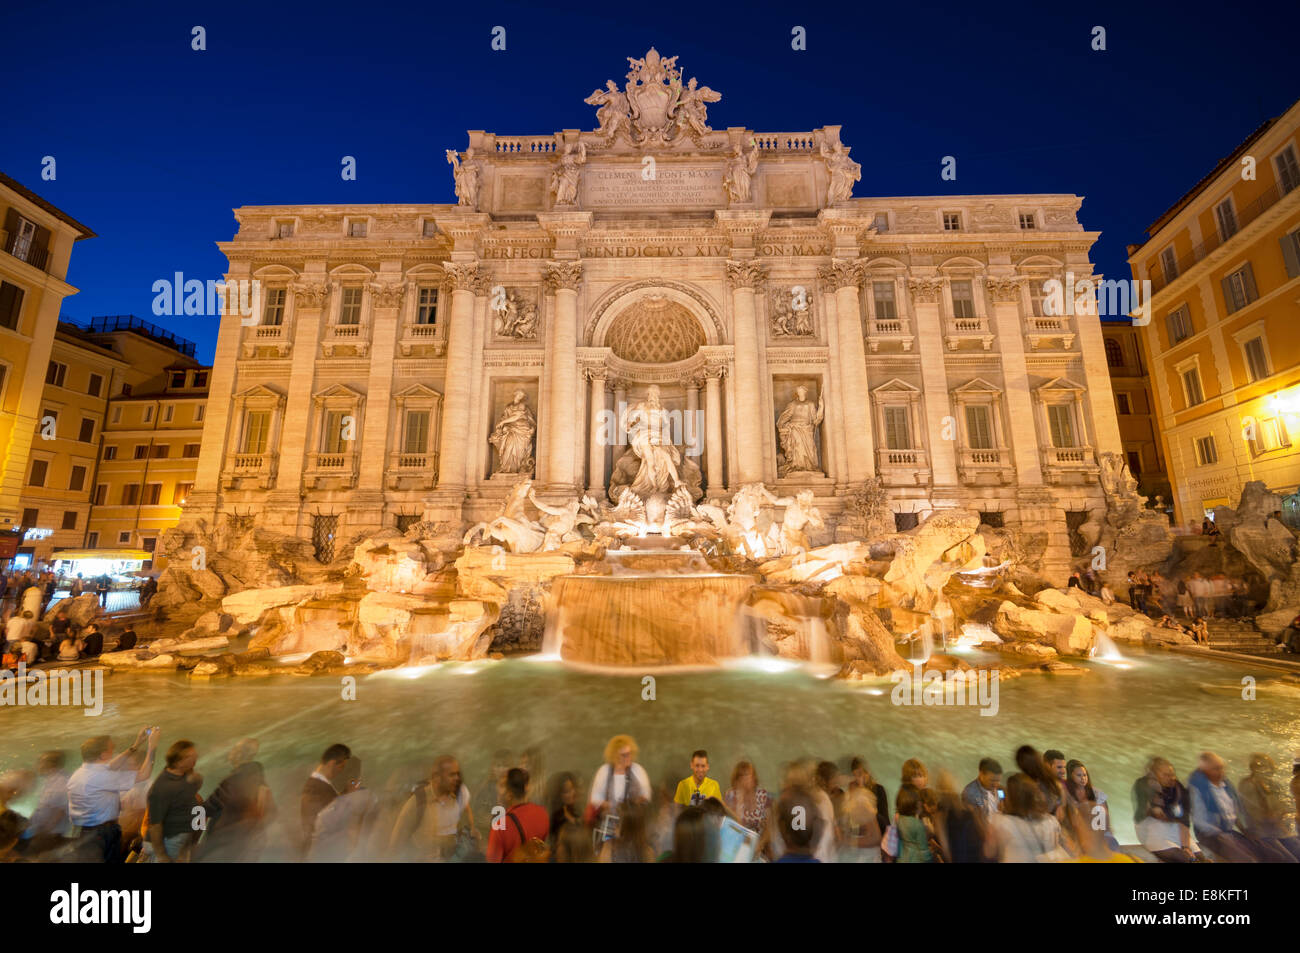 Rome, Italie - 12 mai 2012 : les touristes visitant la fontaine de Trevi. Fontaine de Trevi est un symbole de la Rome Impériale. C'est l'un Banque D'Images